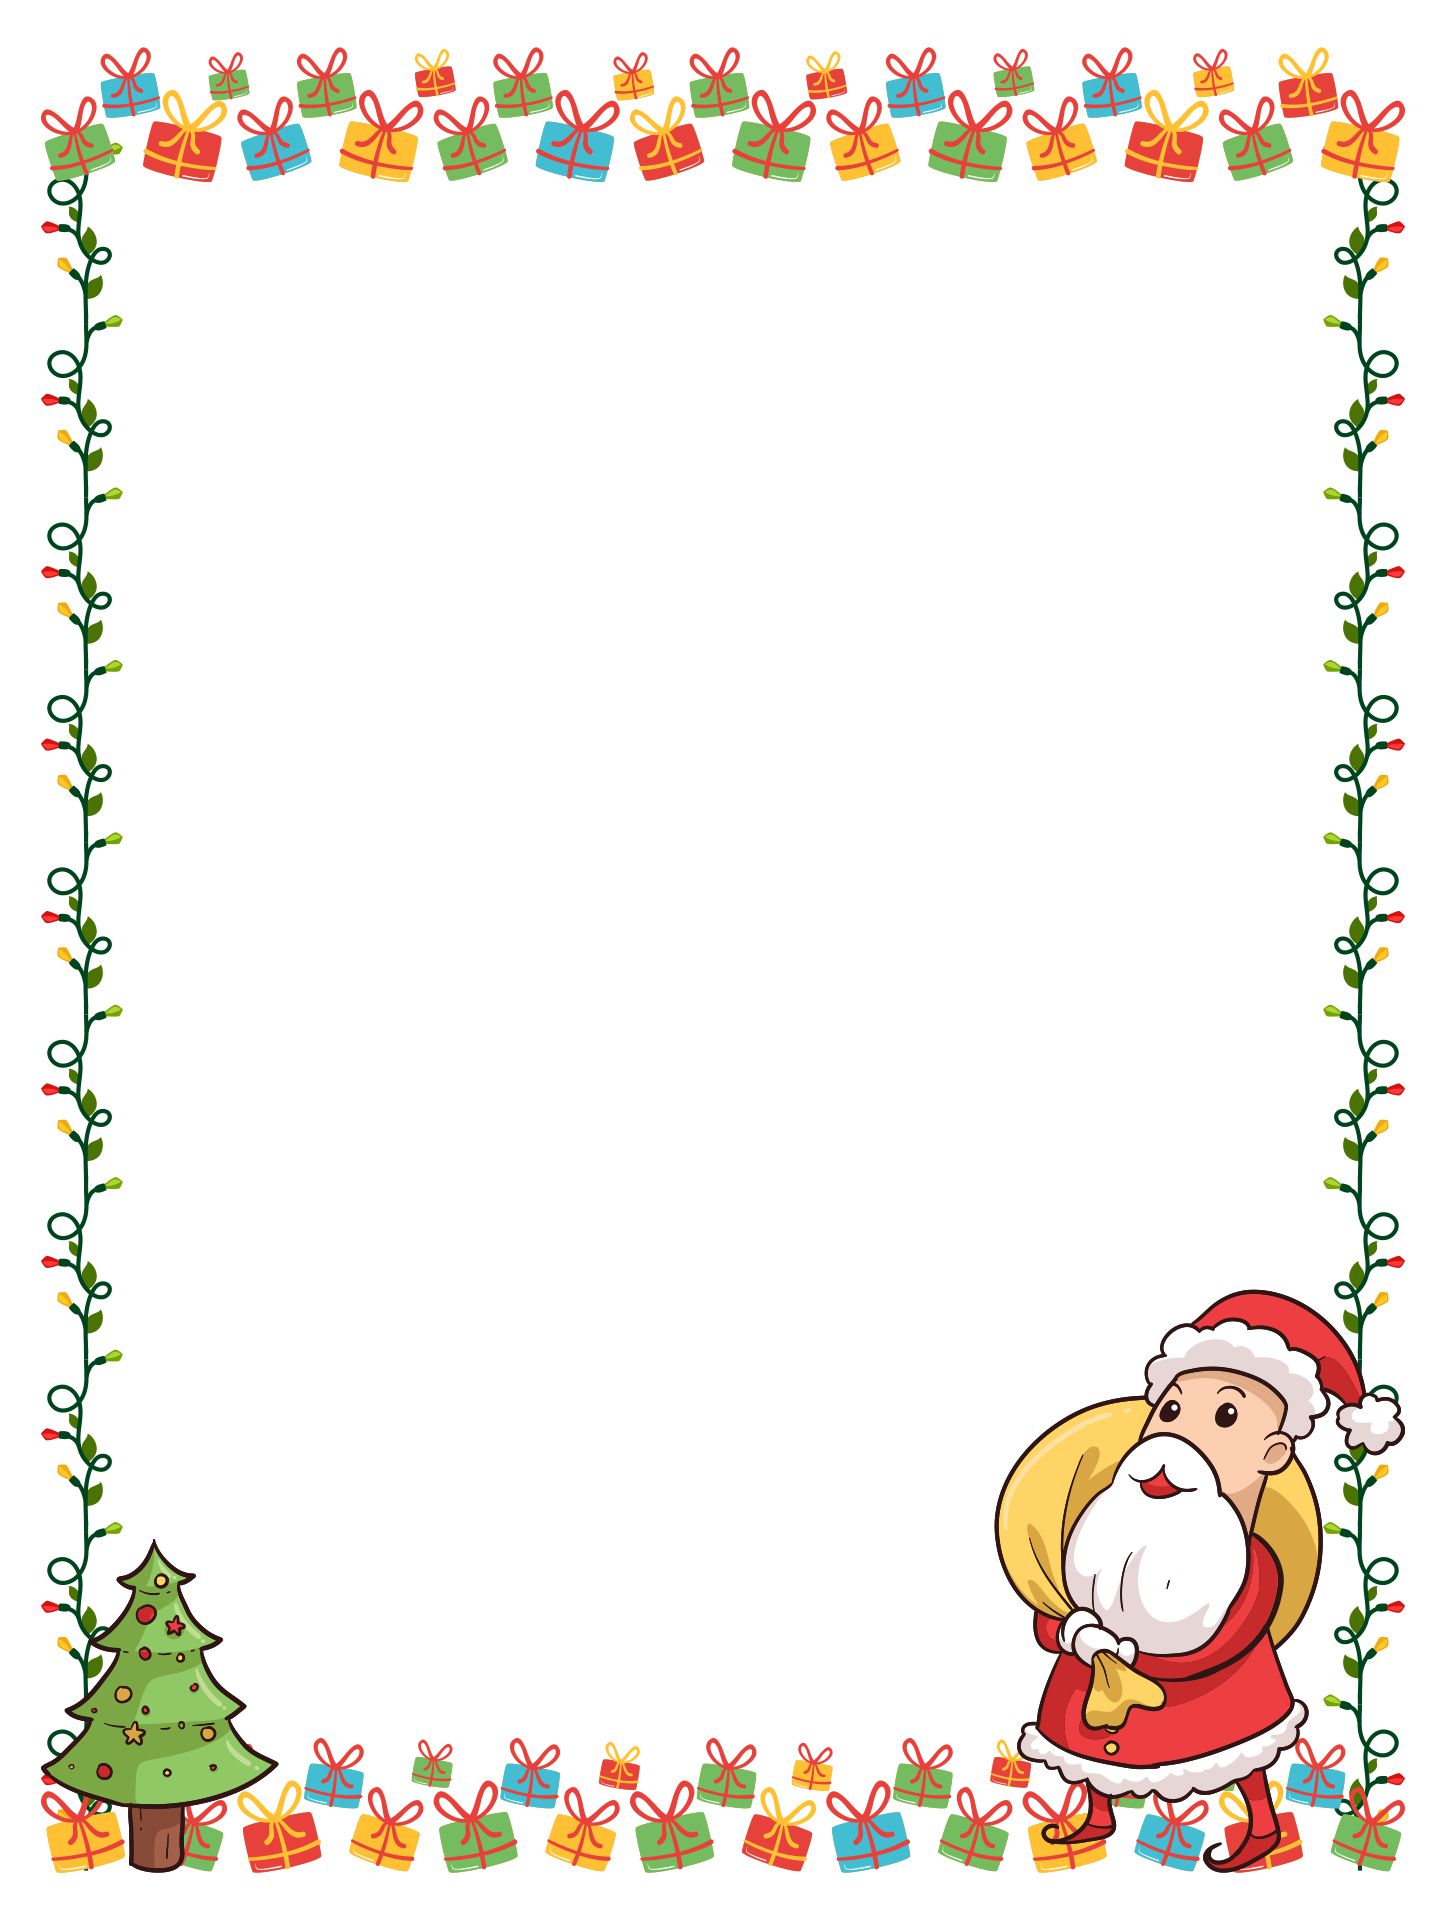 Printable Christmas Border With Santa Claus